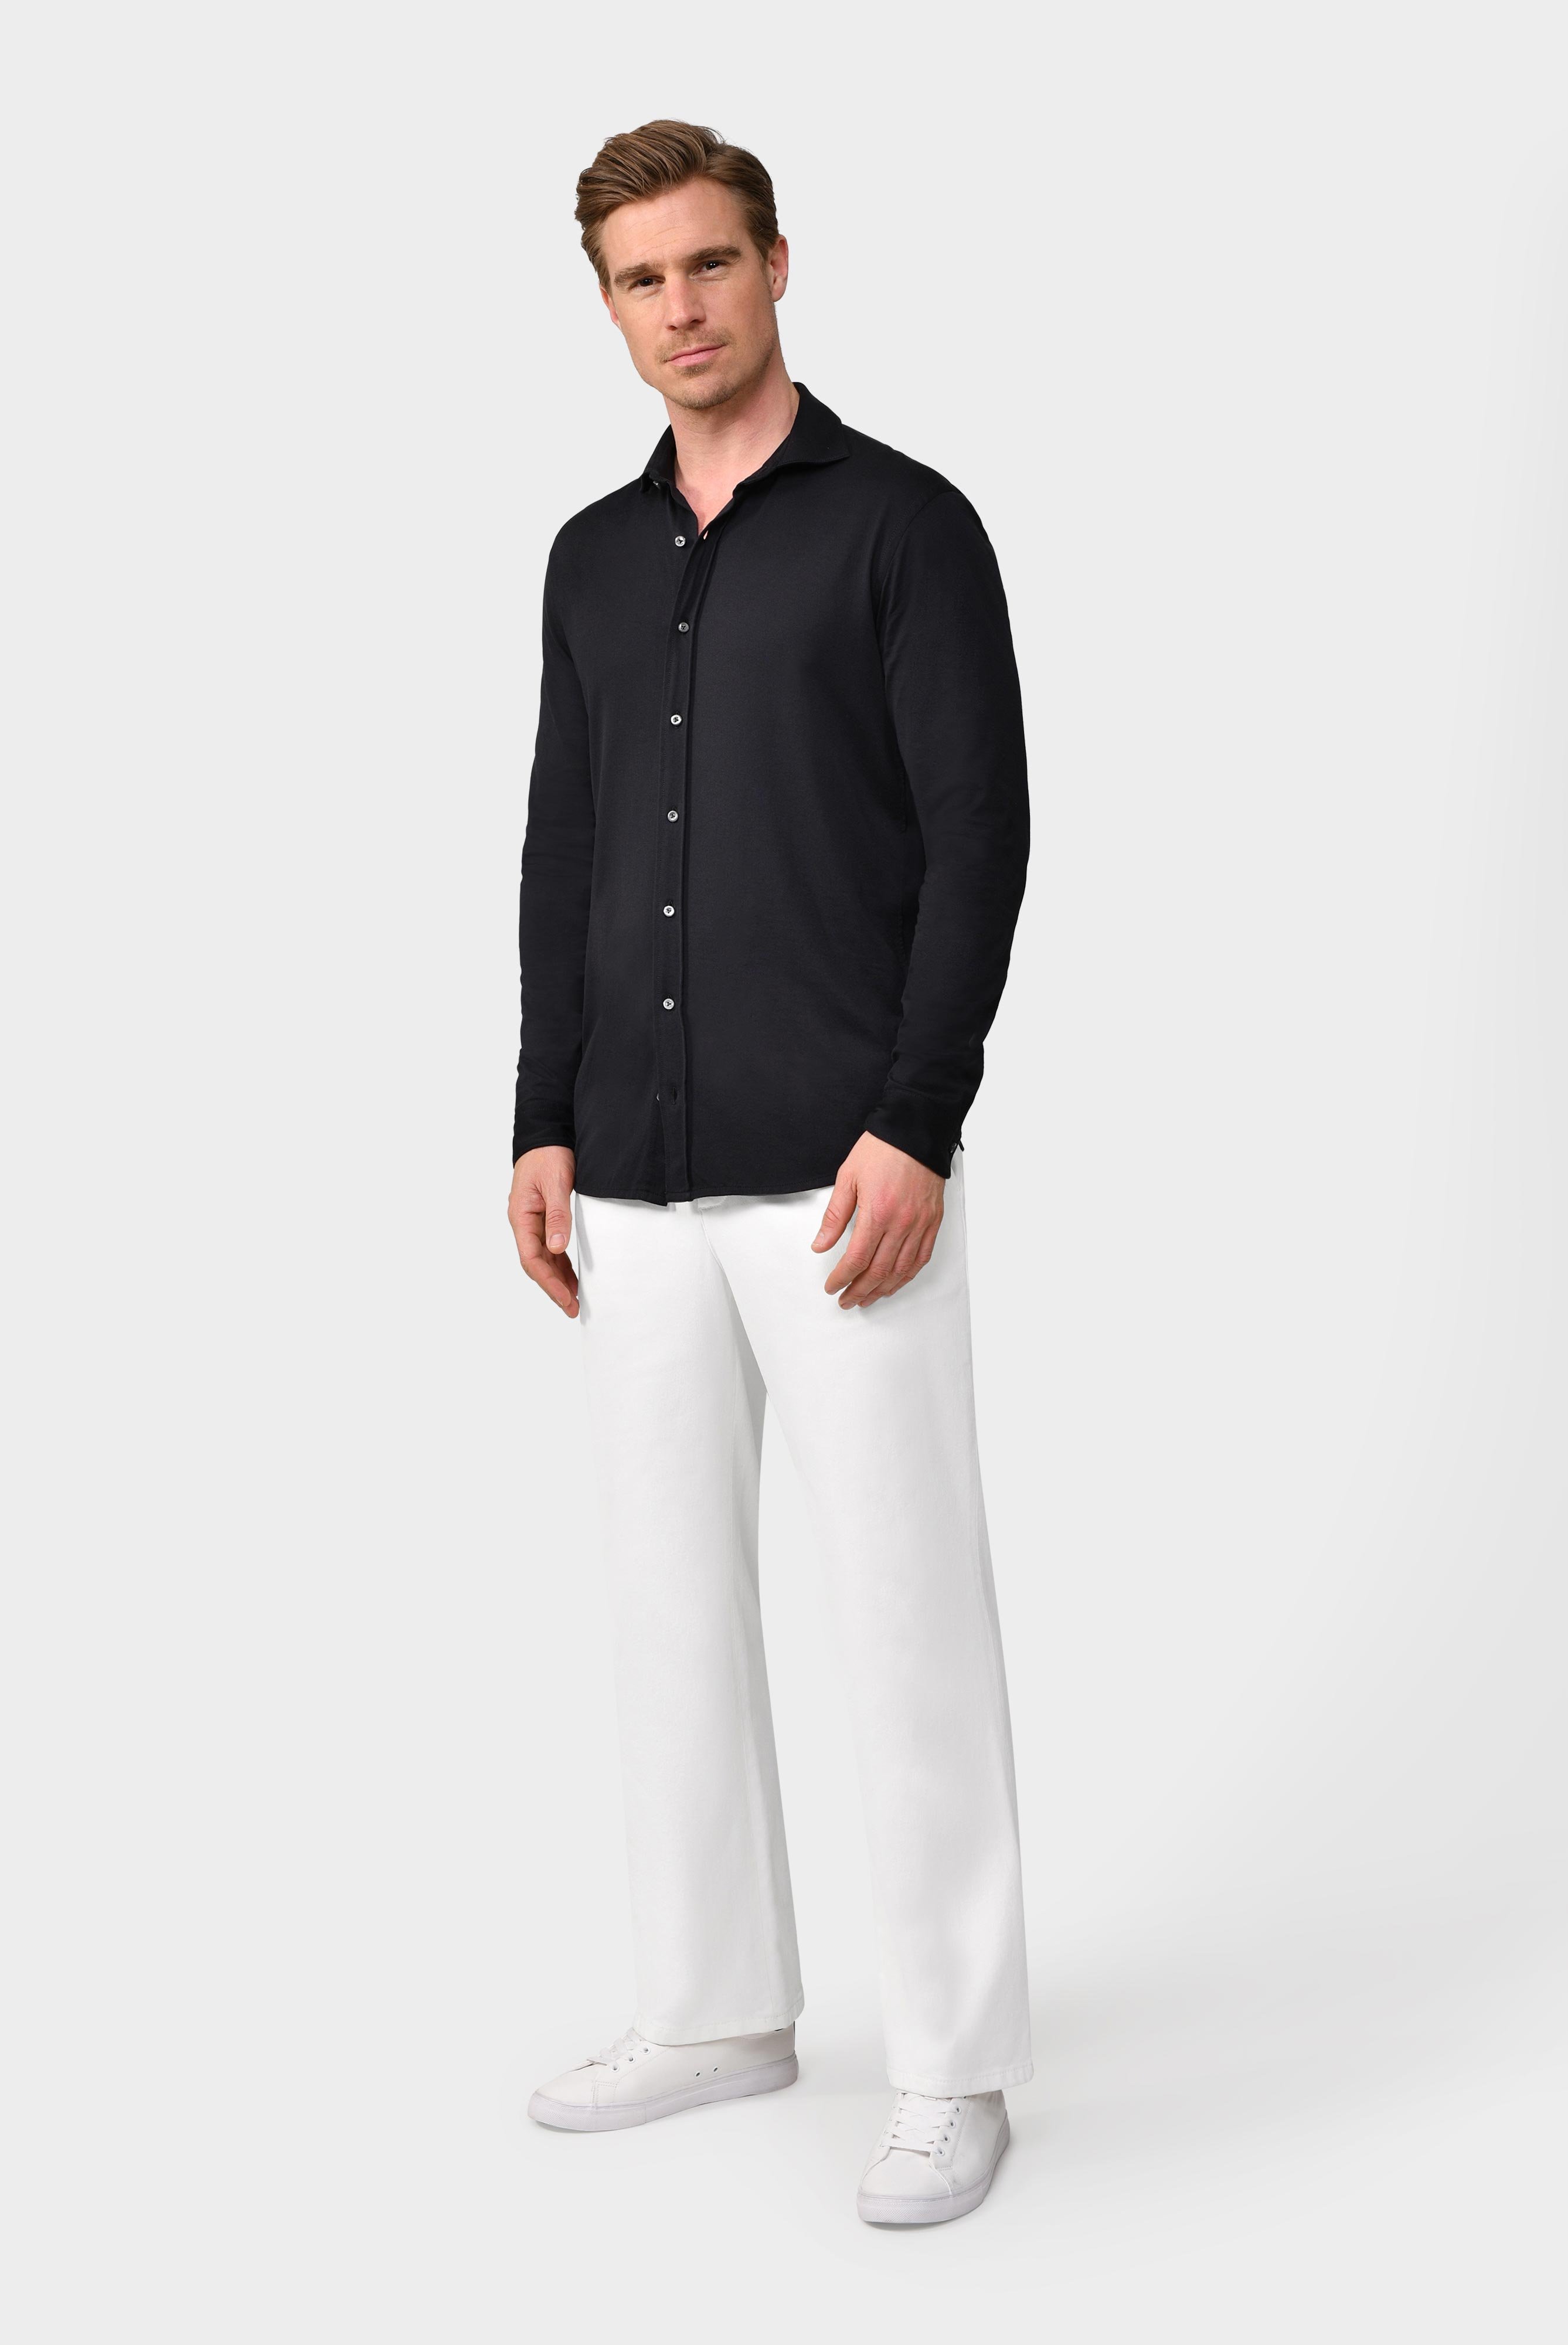 Jersey Hemden+Jersey Shirt Urban Look Slim Fit+20.1651.UC.Z20044.099.S